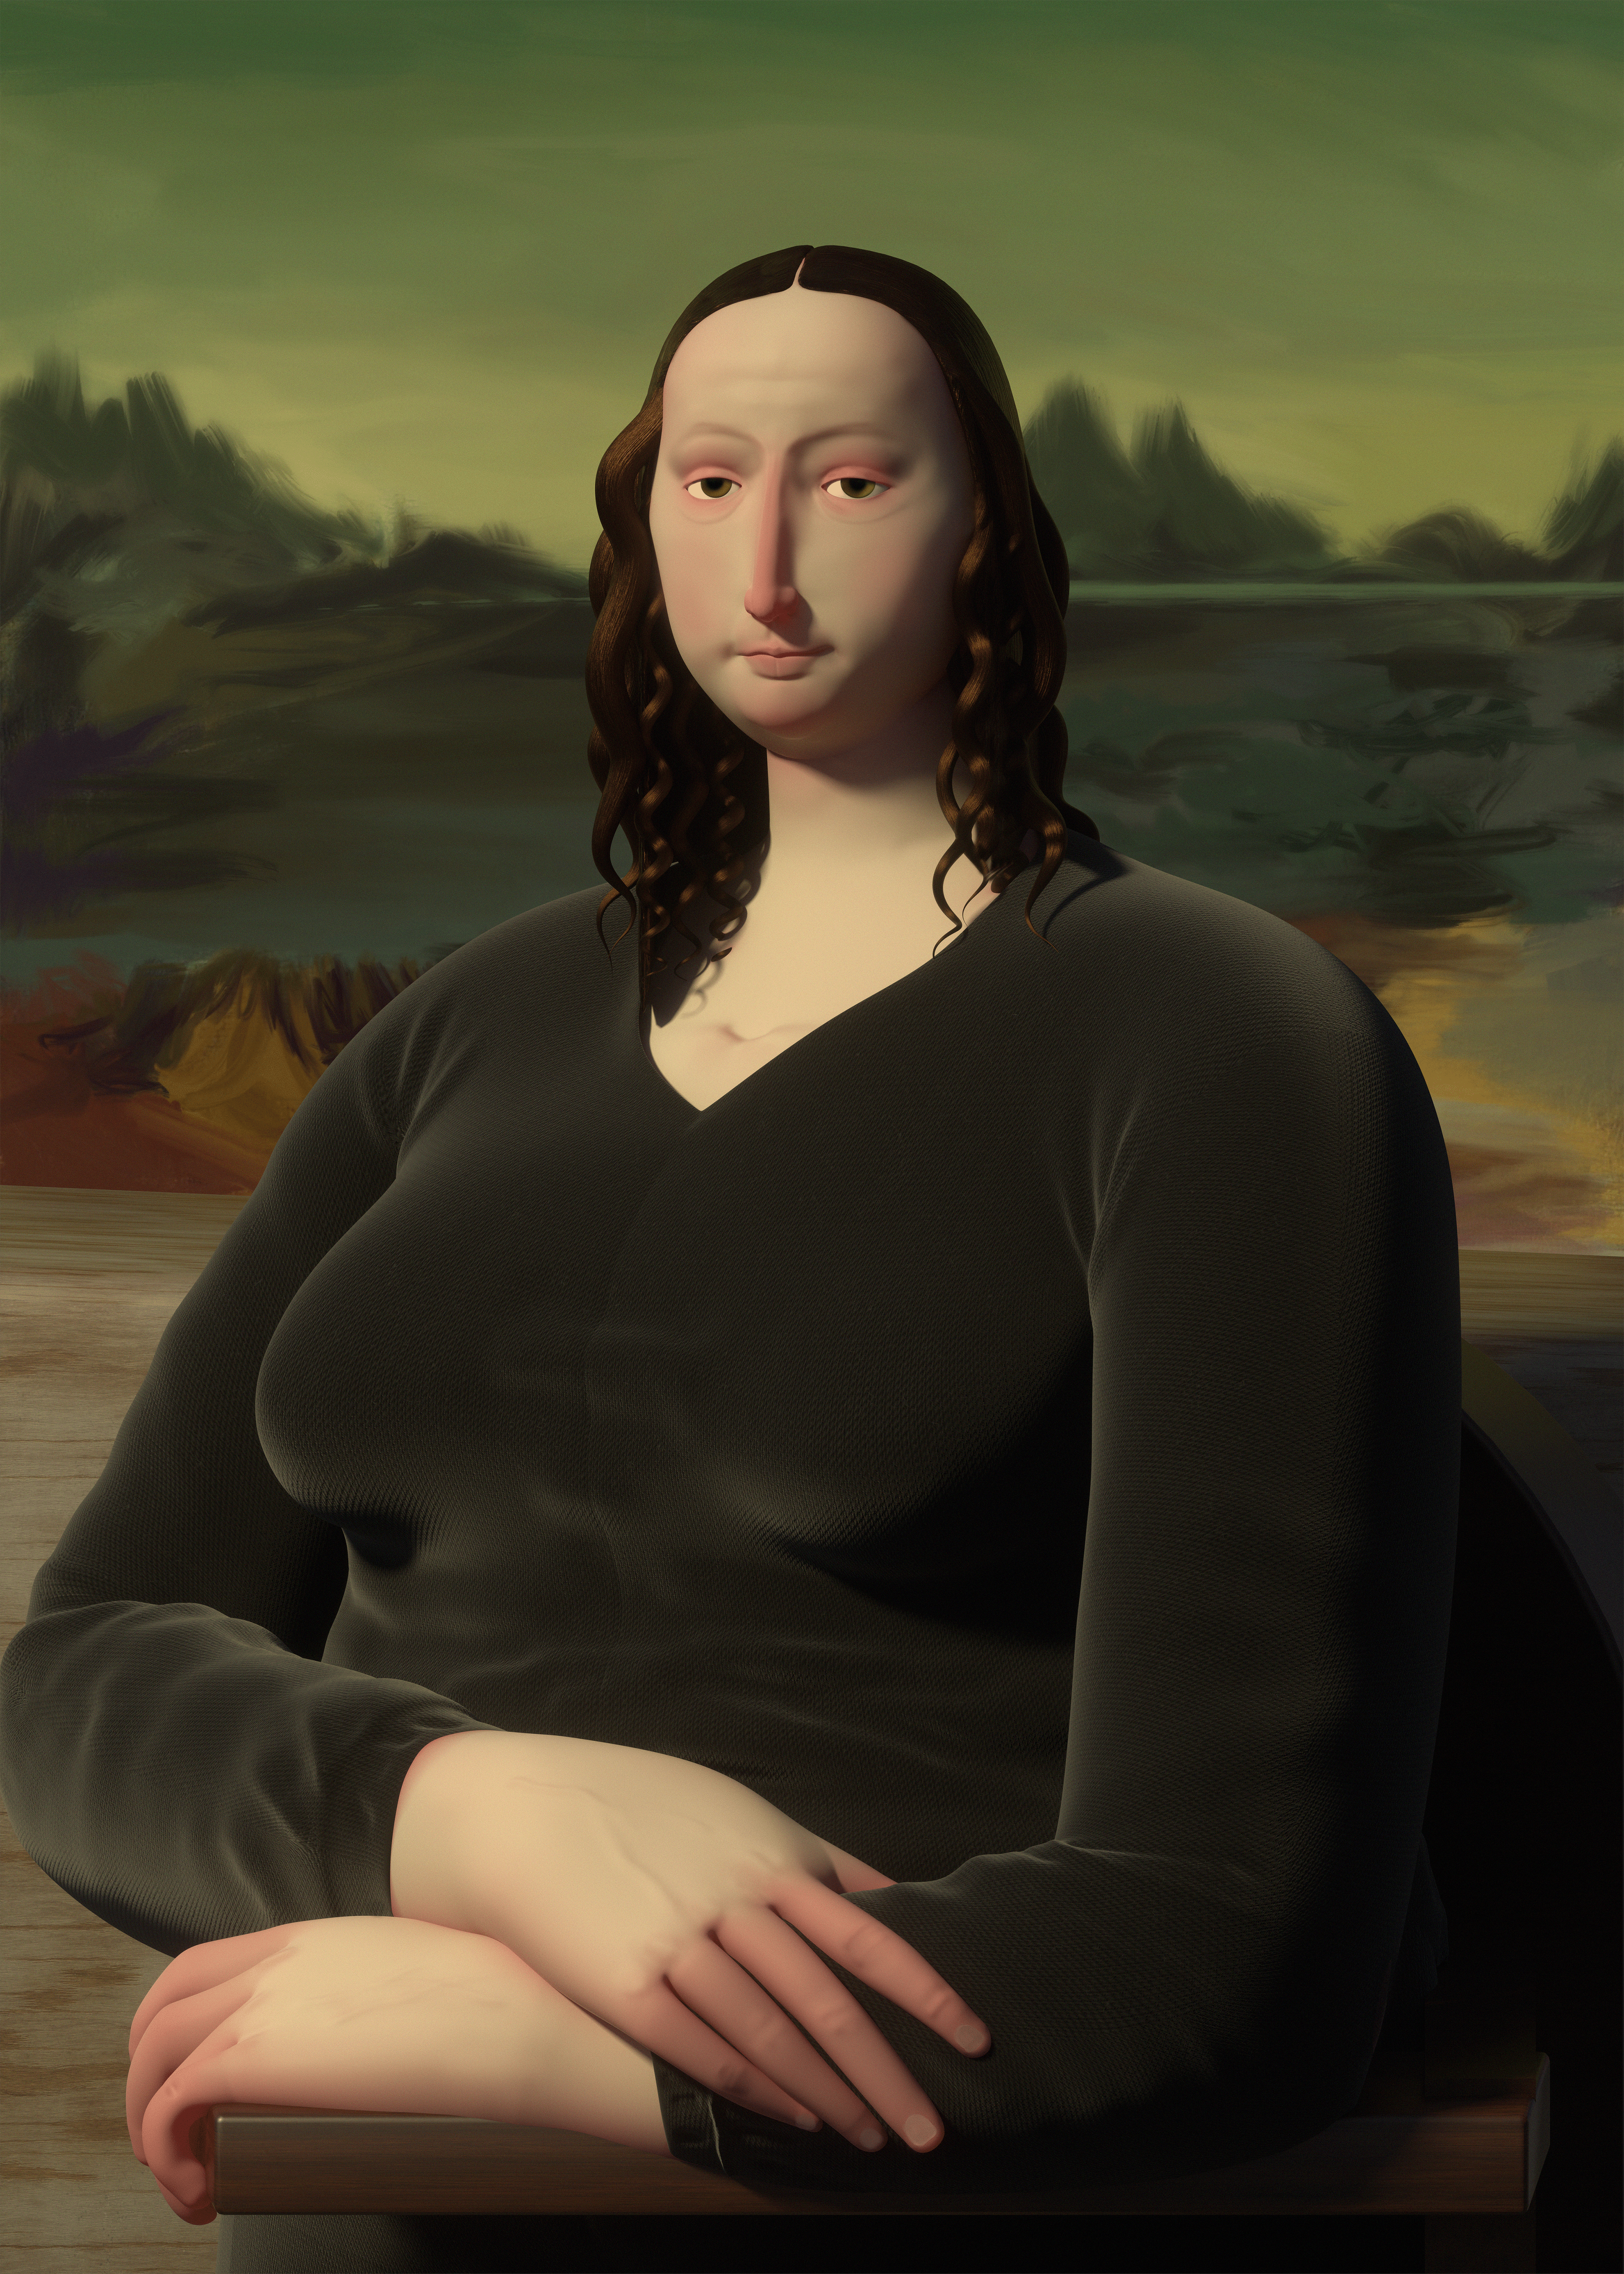 My Mona